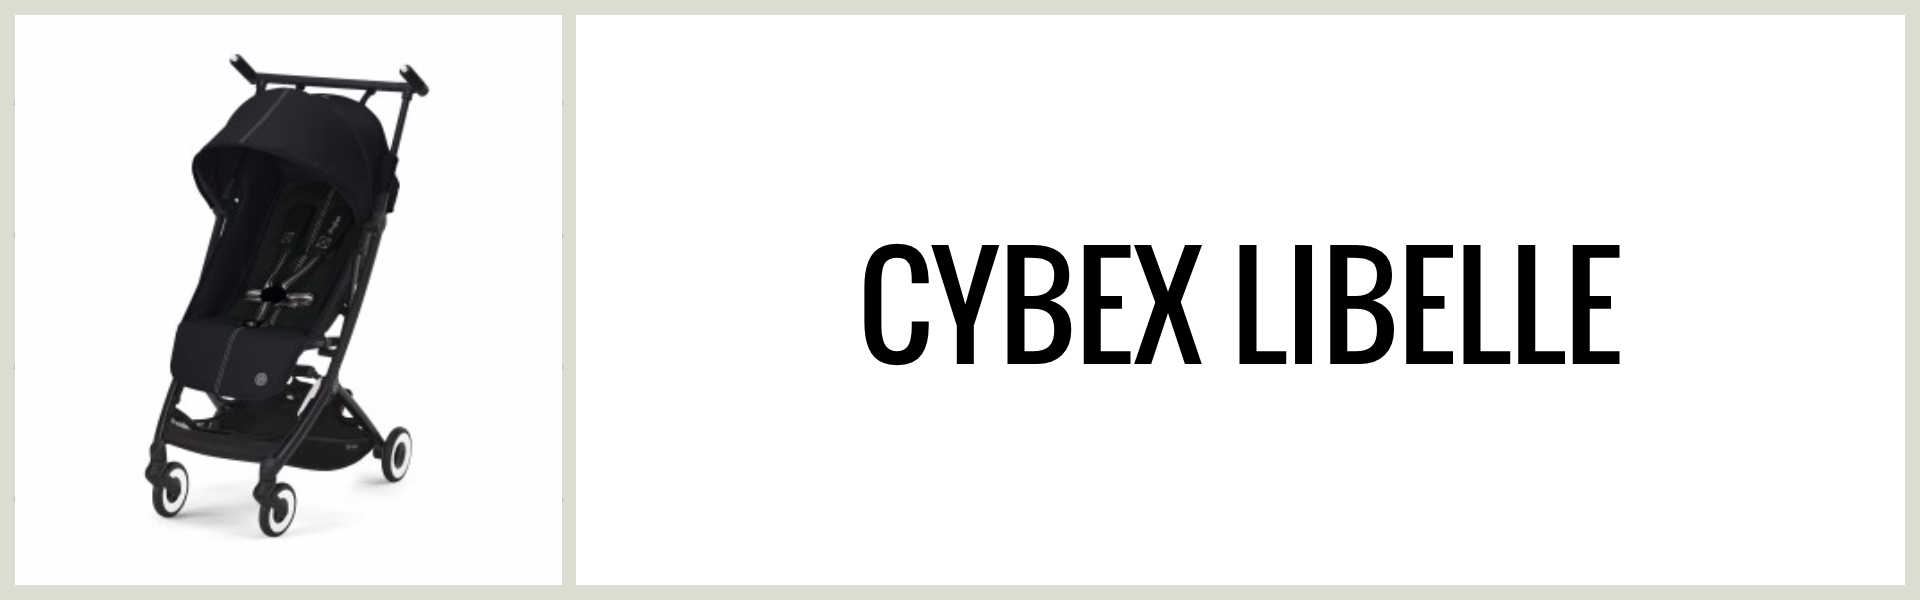 Omdöme: Hur är Cybex Libelle som resevagn?